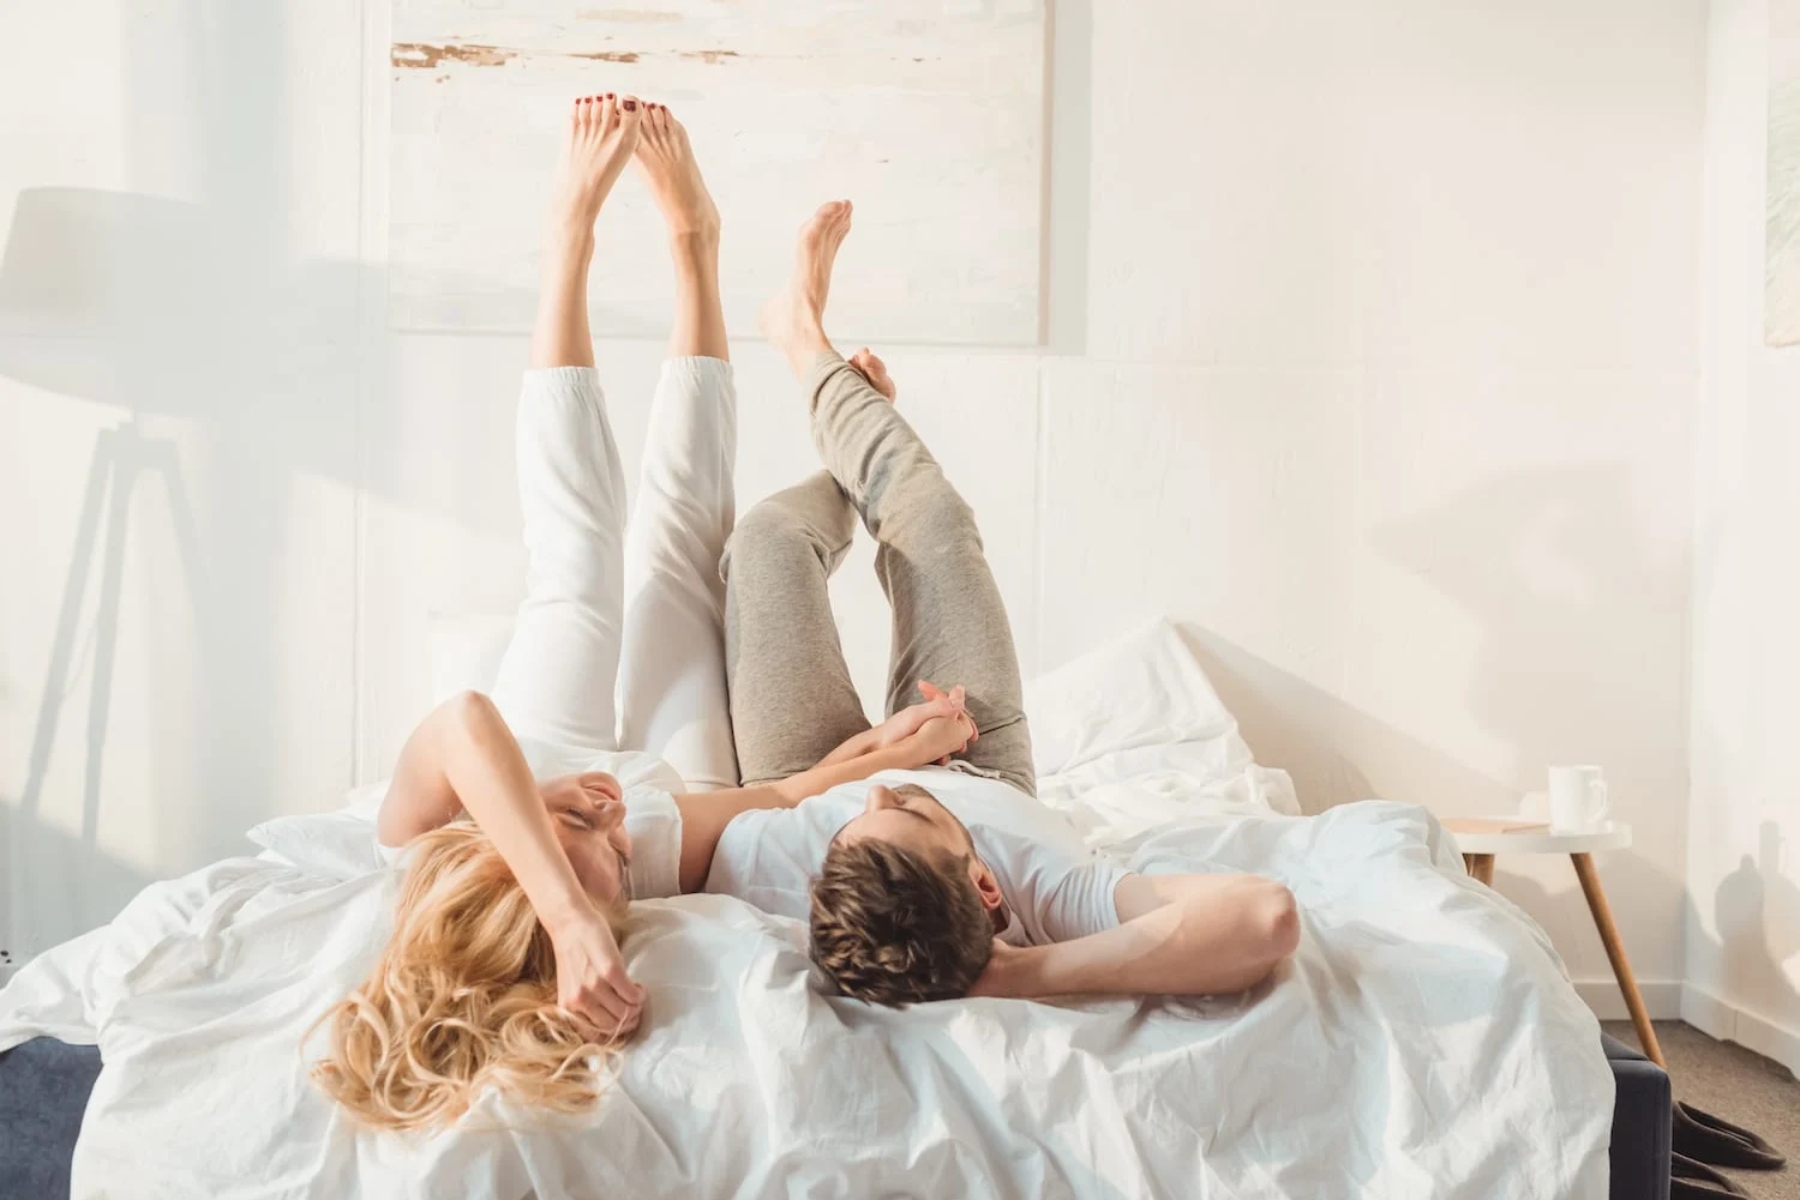 Σχέσεις: Πώς επηρεάζει το ζευγάρι ο ύπνος σε ξεχωριστά υπνοδωμάτια;